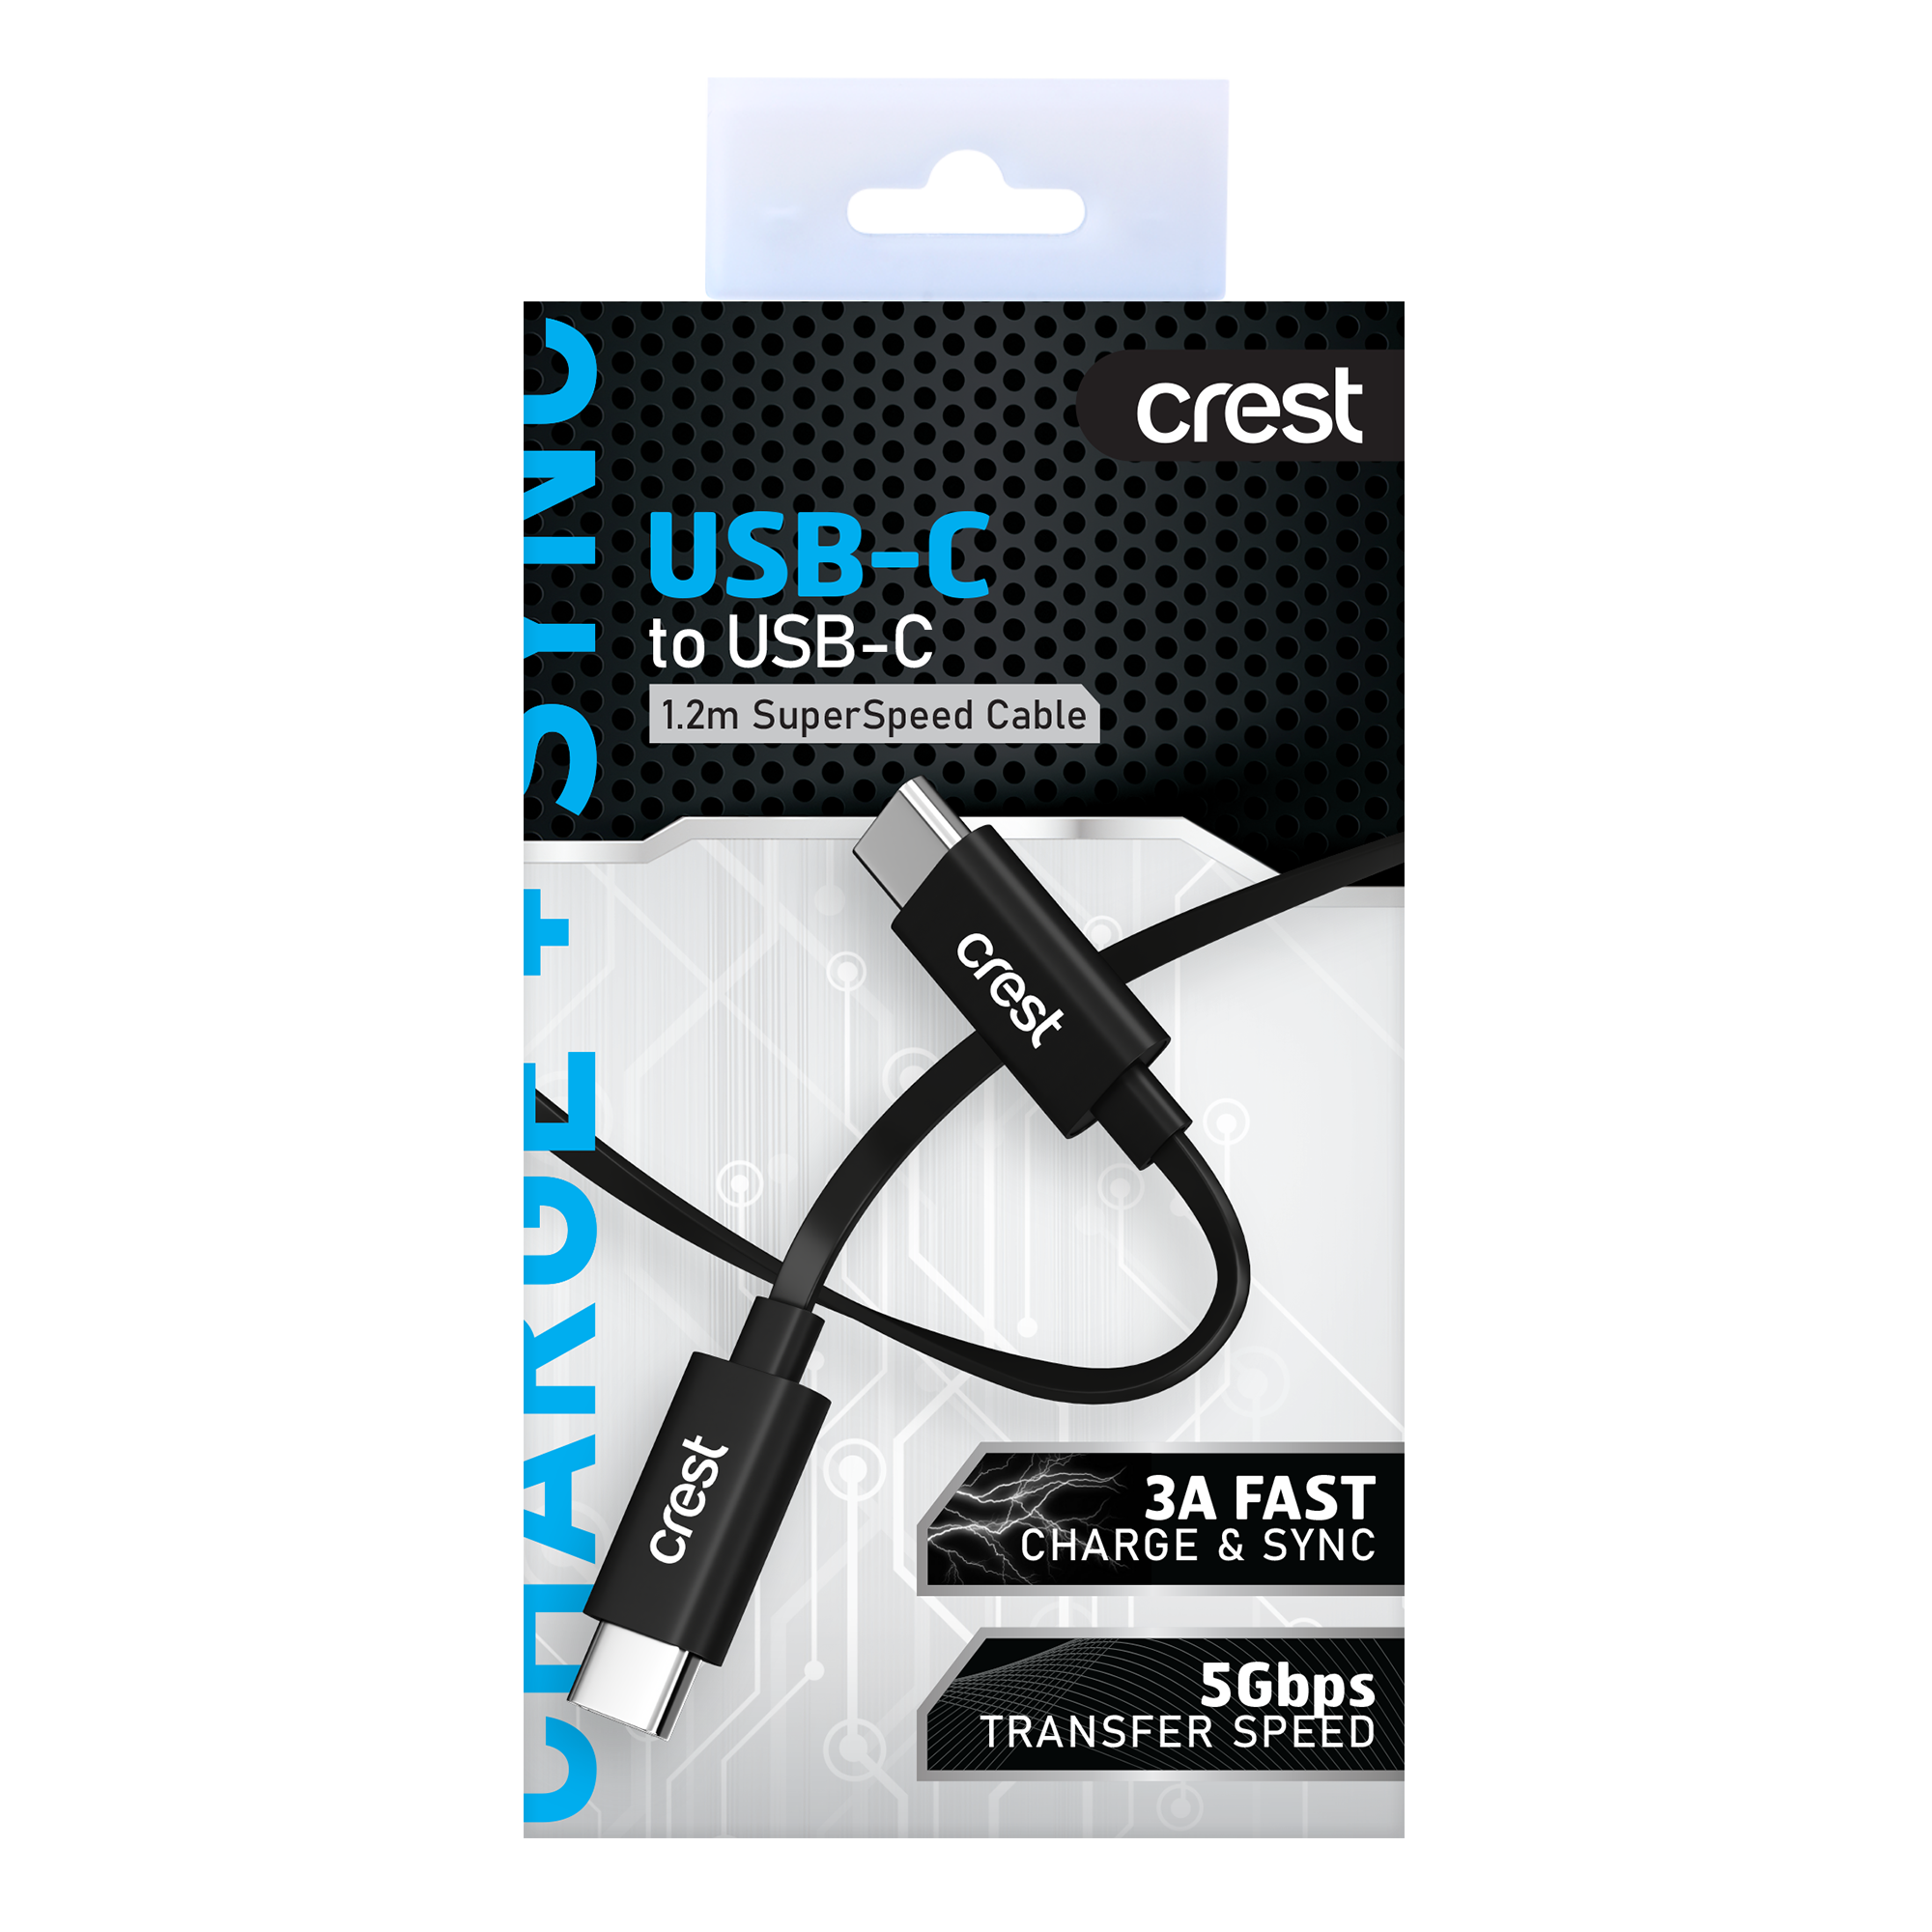 Super Speed USB-C Cable 1.2M - Black